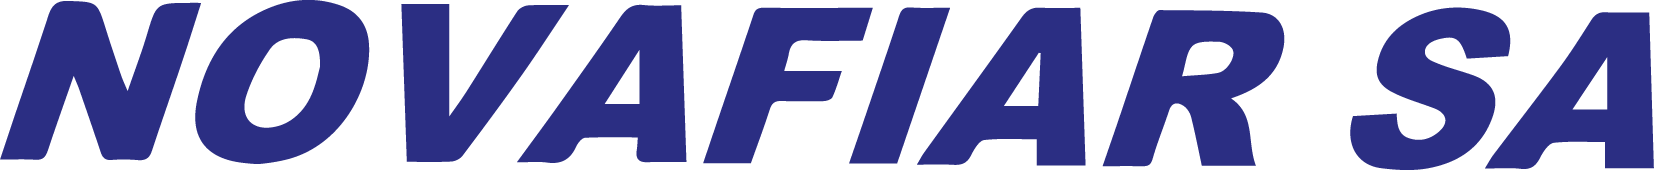 logo_Novafiar_SA